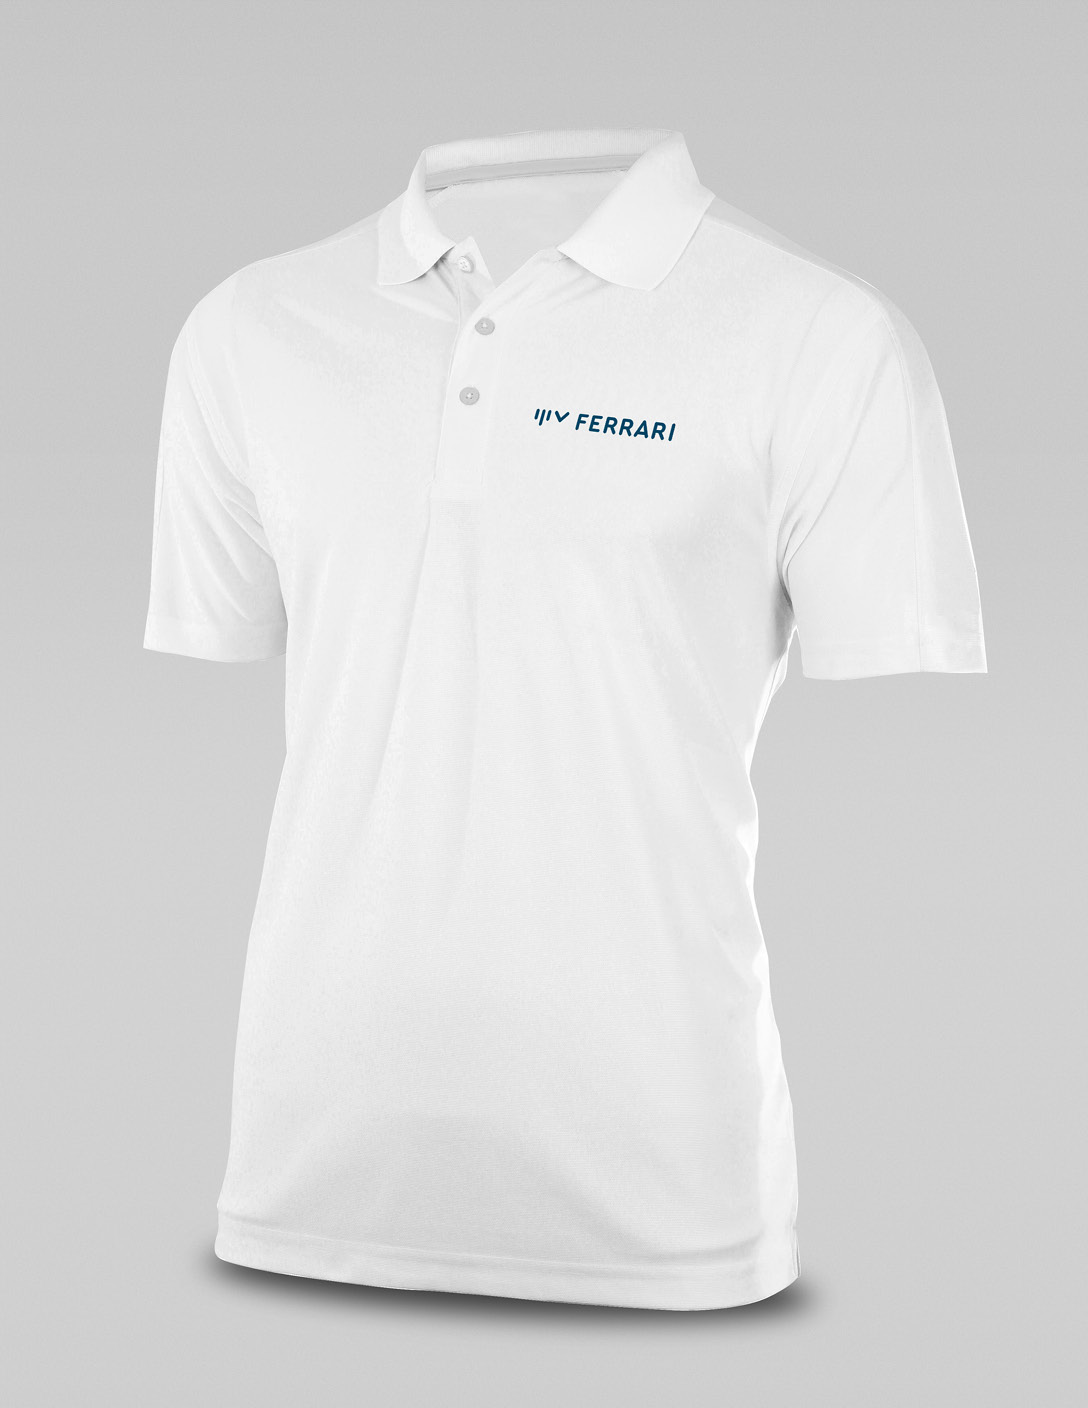 Als Merchandise haben wir ein weißes T-Shirt mit dem auffallenden, blauen Logo von Dr. Jan Ferrari versehen